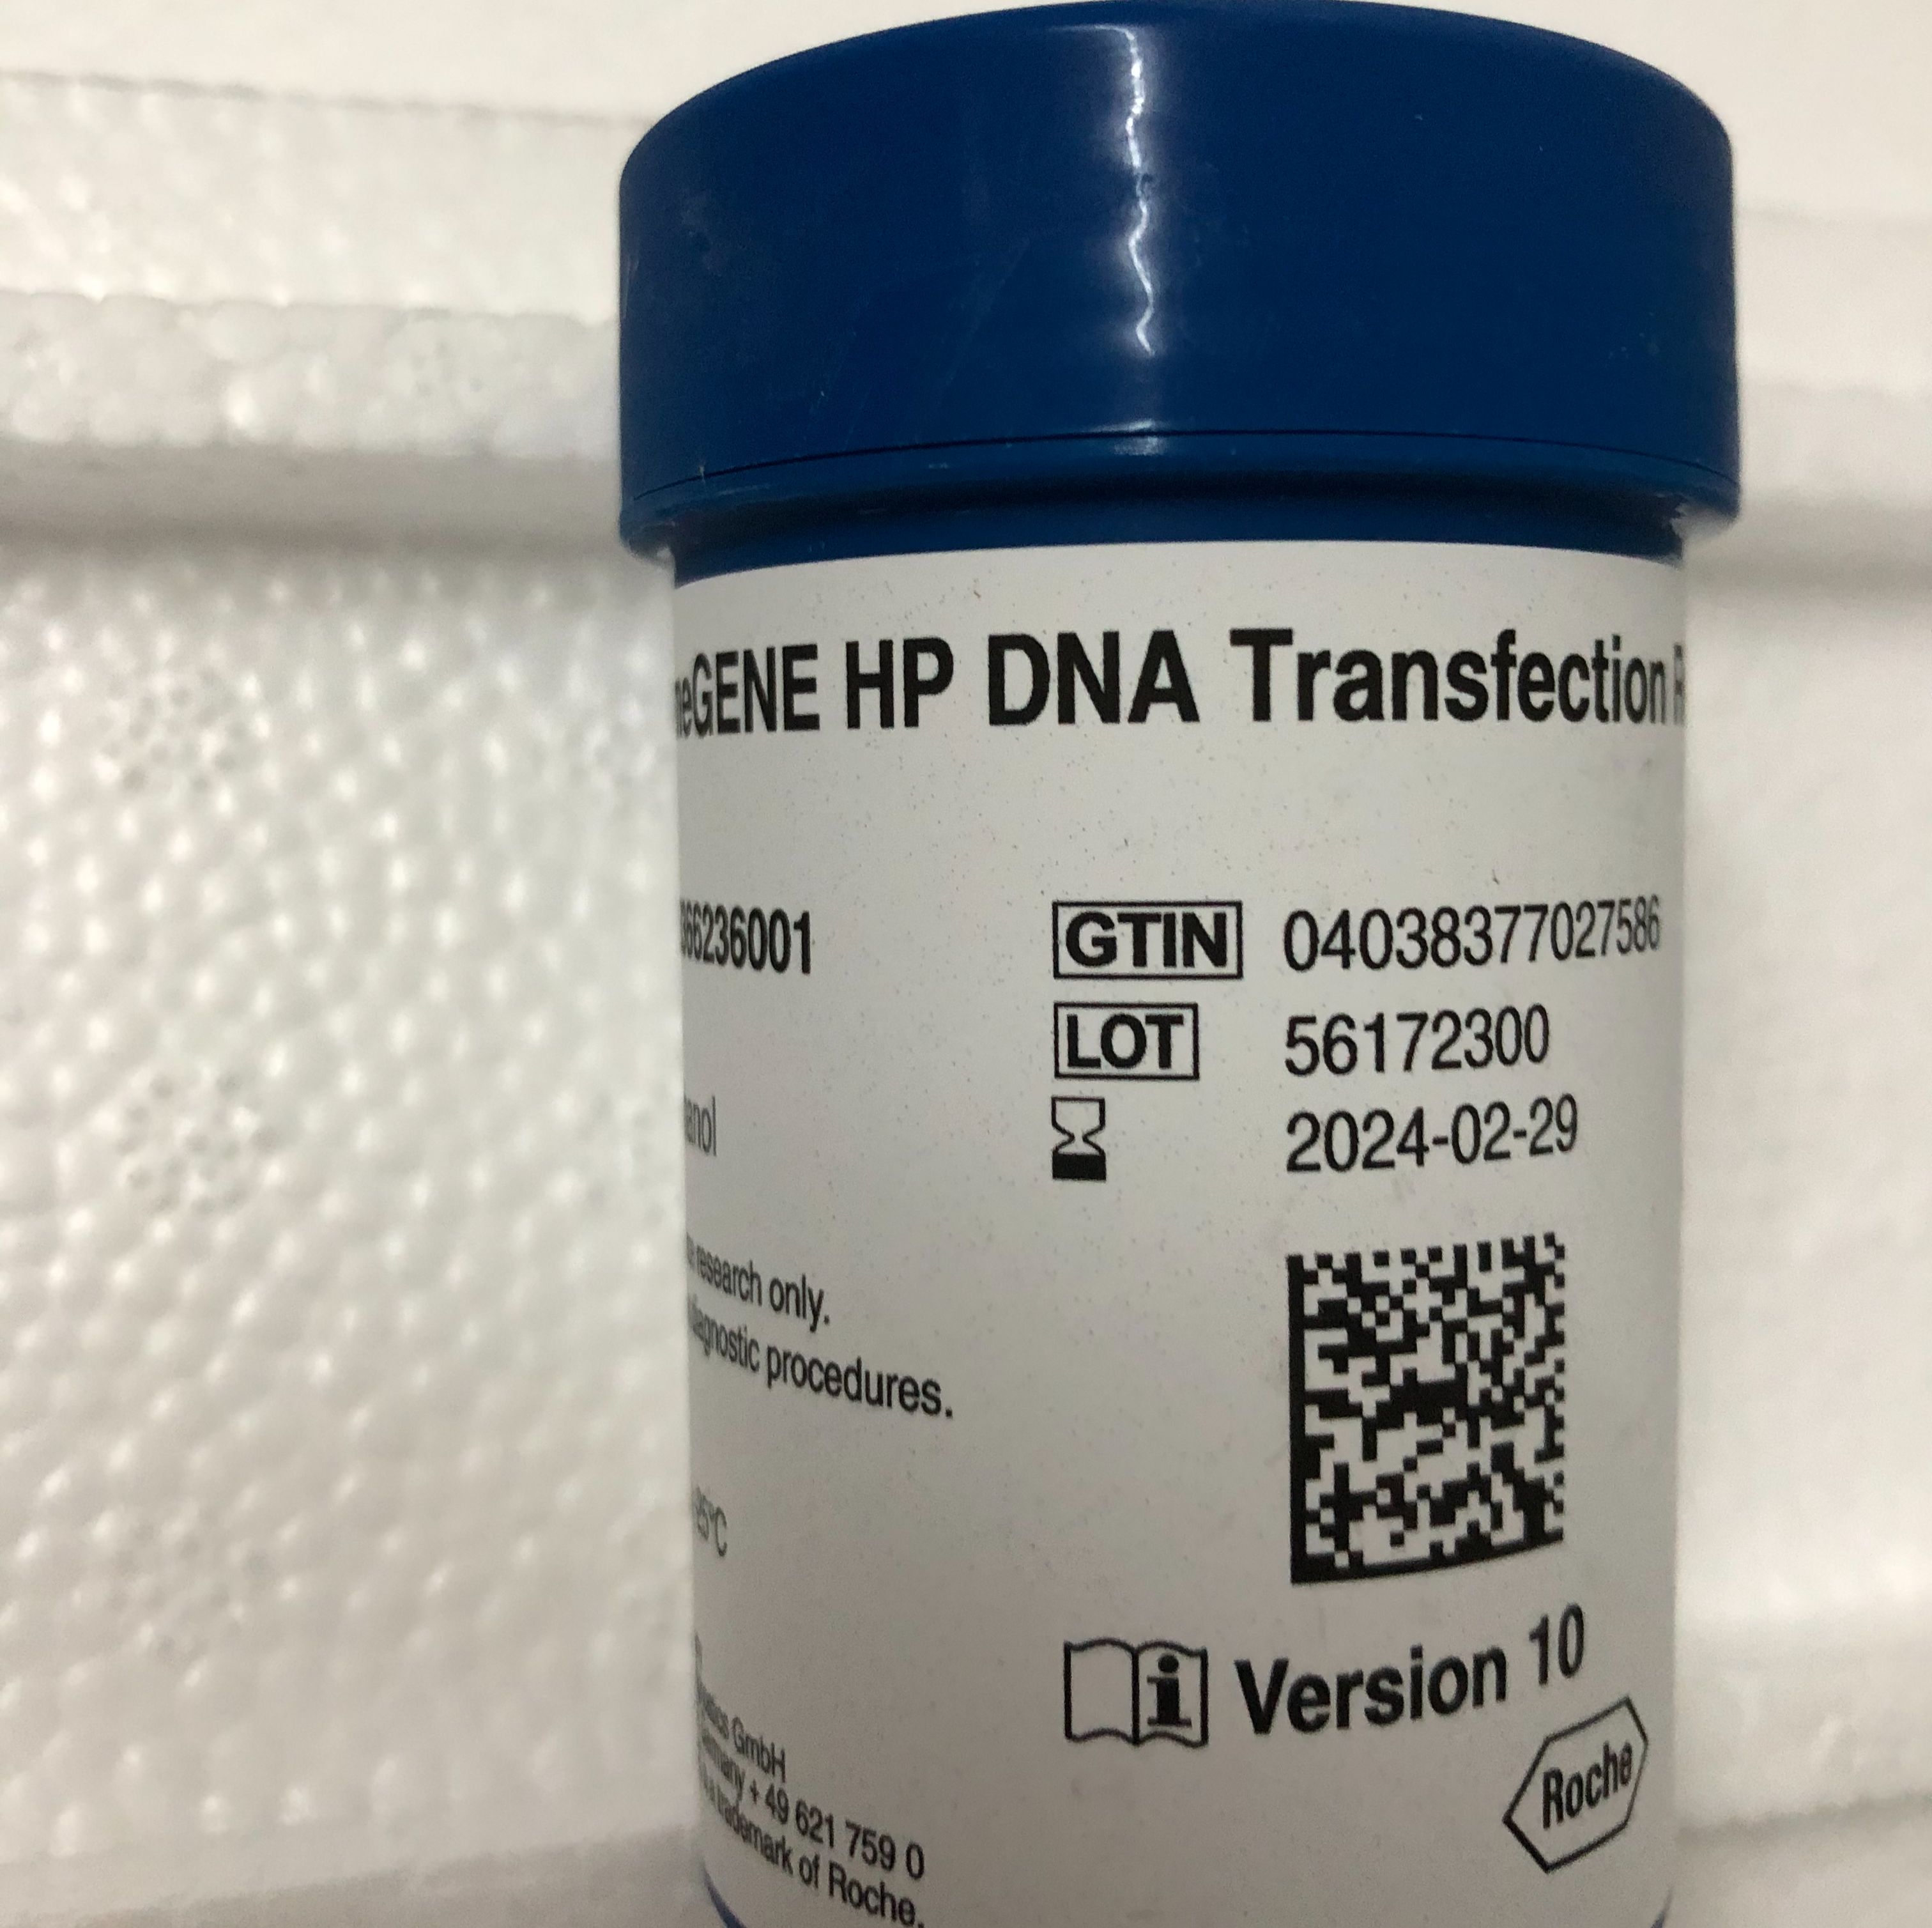 Roche 6366236001 X-tremeGENE HP DNA转染试剂13611631389上海睿安生物